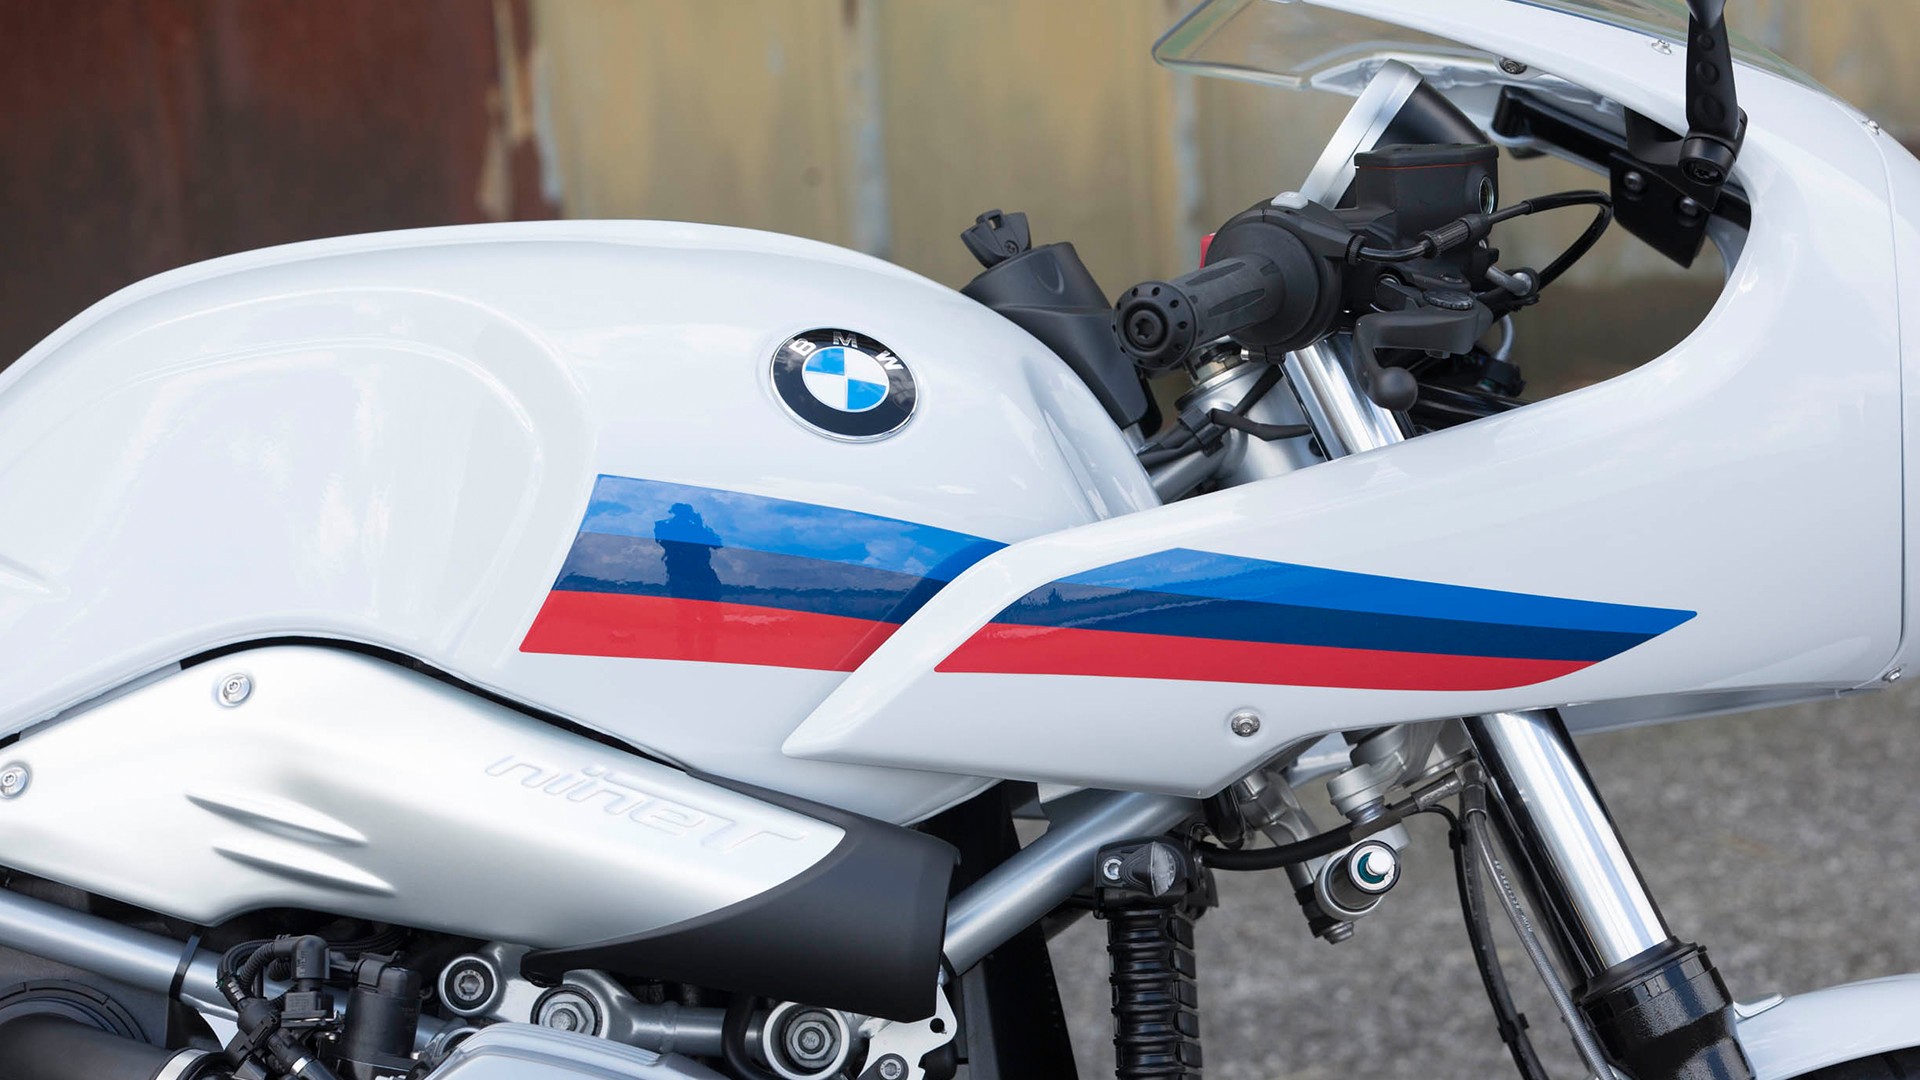 Деталі в кольорах спортивного відділення BMW Motorrad.